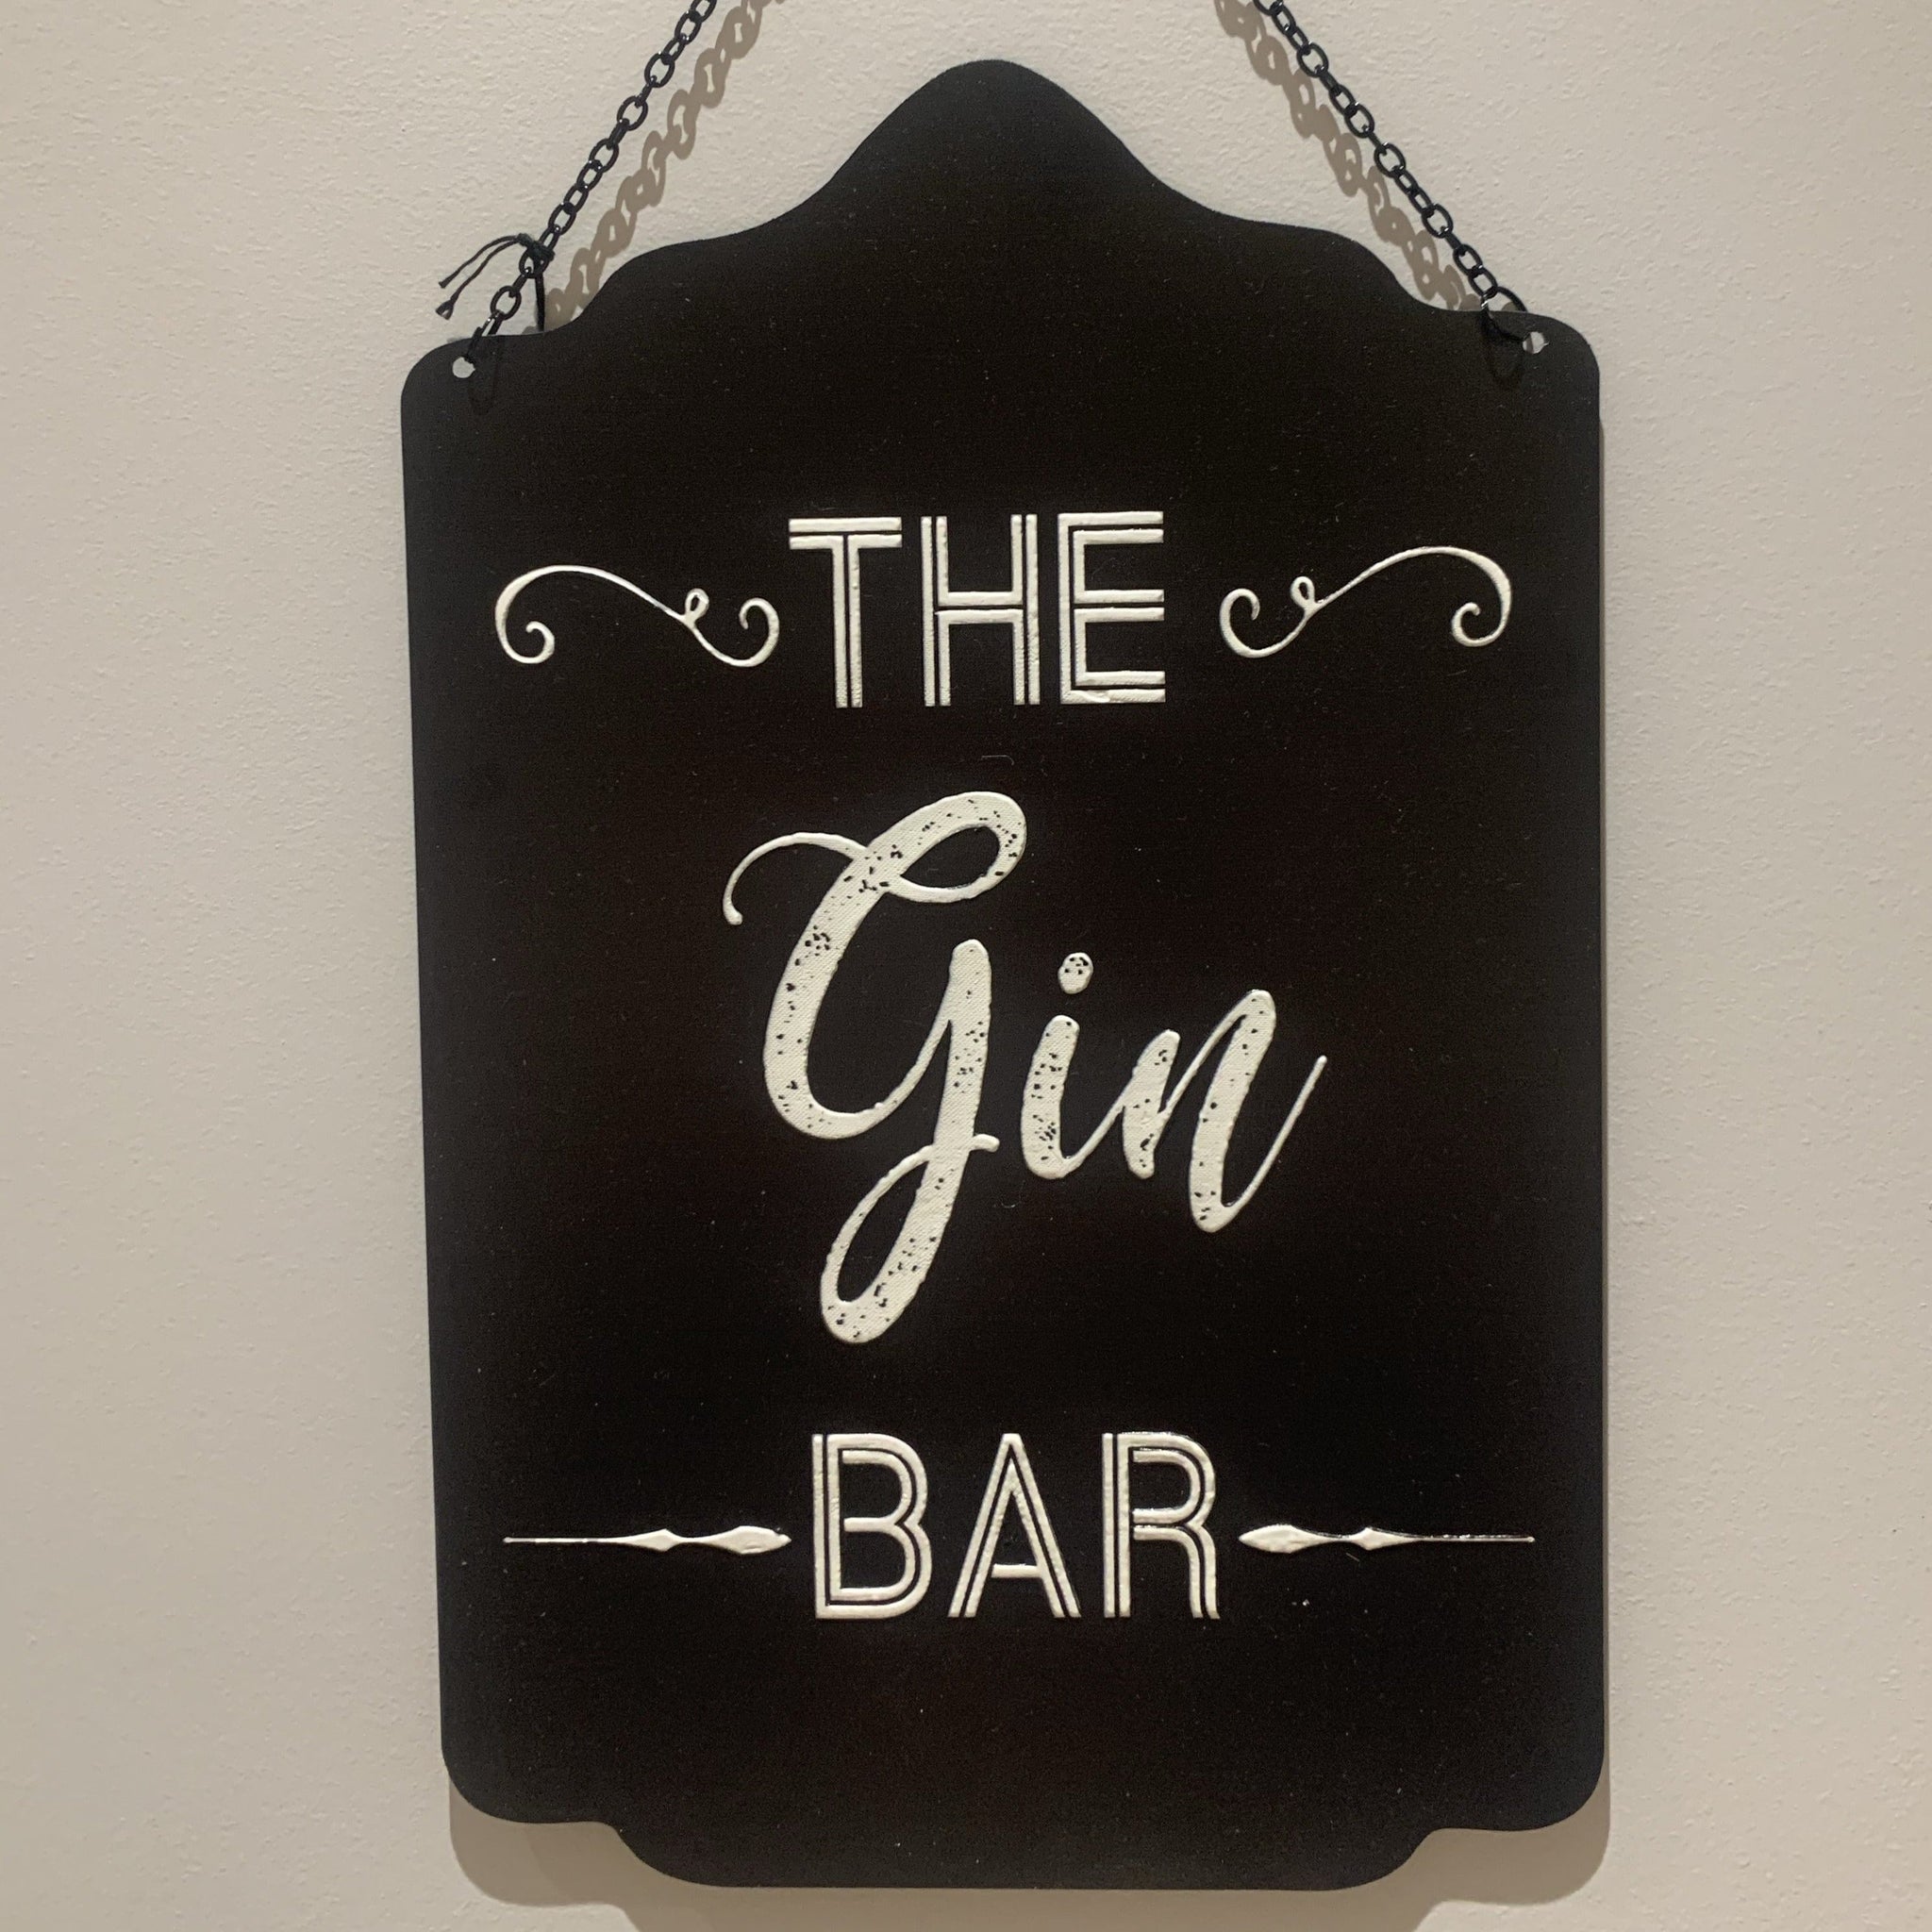 Gin bar sign